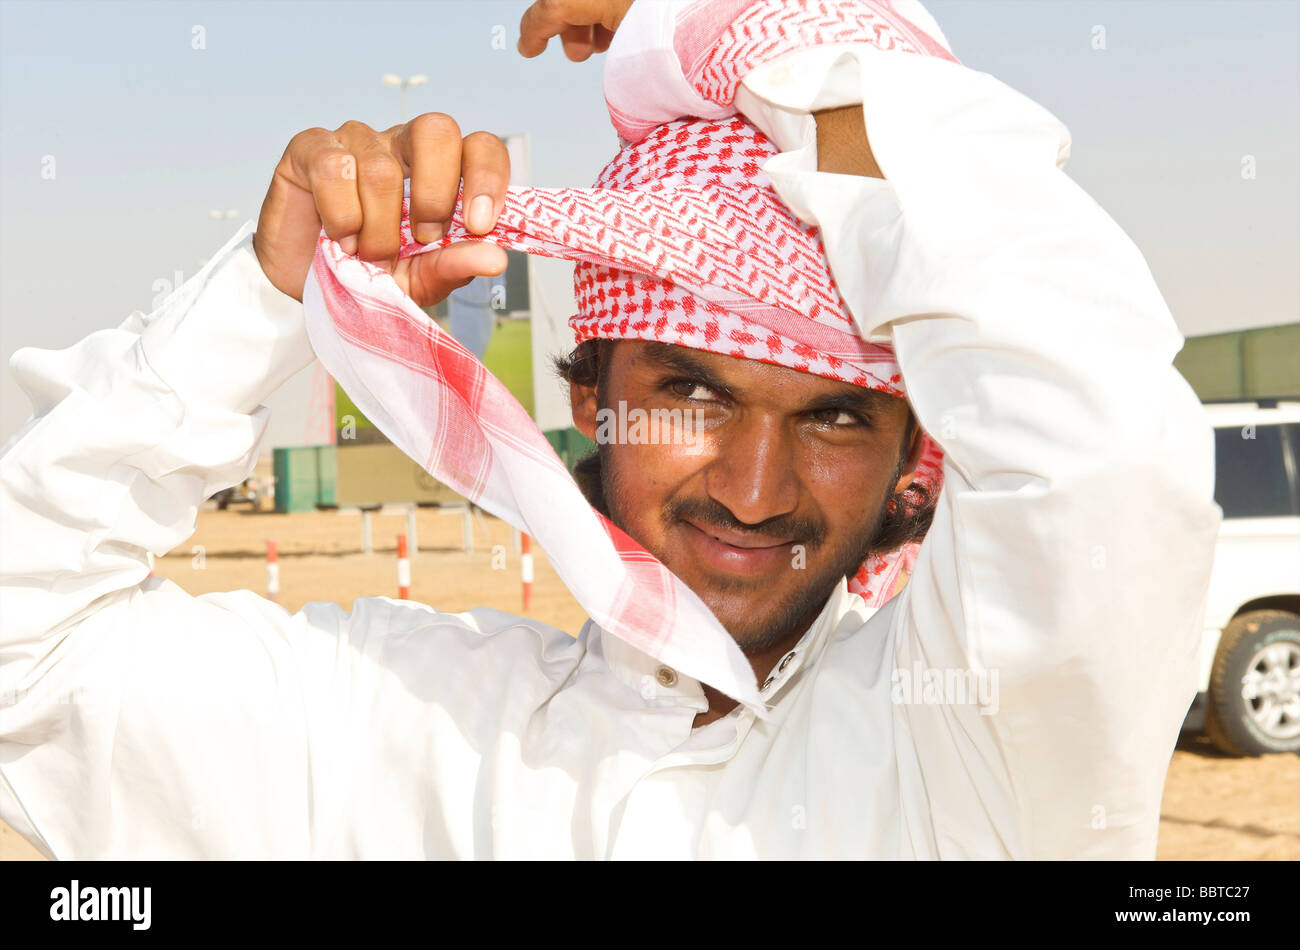 Dubaï démonstration de comment attacher un foulard Photo Stock - Alamy